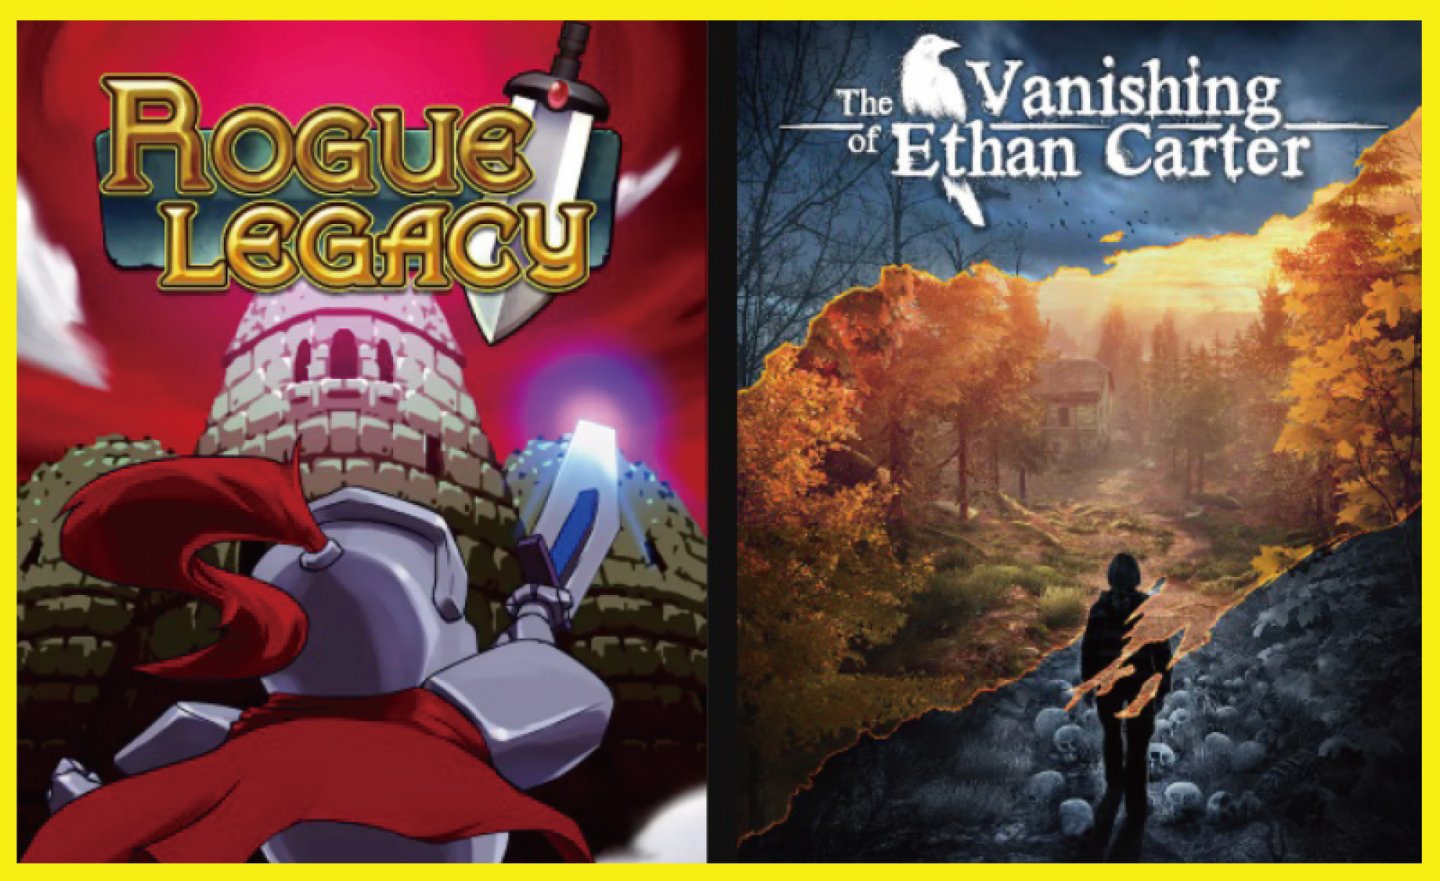 【限時免費】《Rogue Legacy 盜賊遺產》與《The Vanishing of Ethan Carter 伊森卡特的消失之謎》放送中，2022 年 4 月 14 日 23:00 前領取